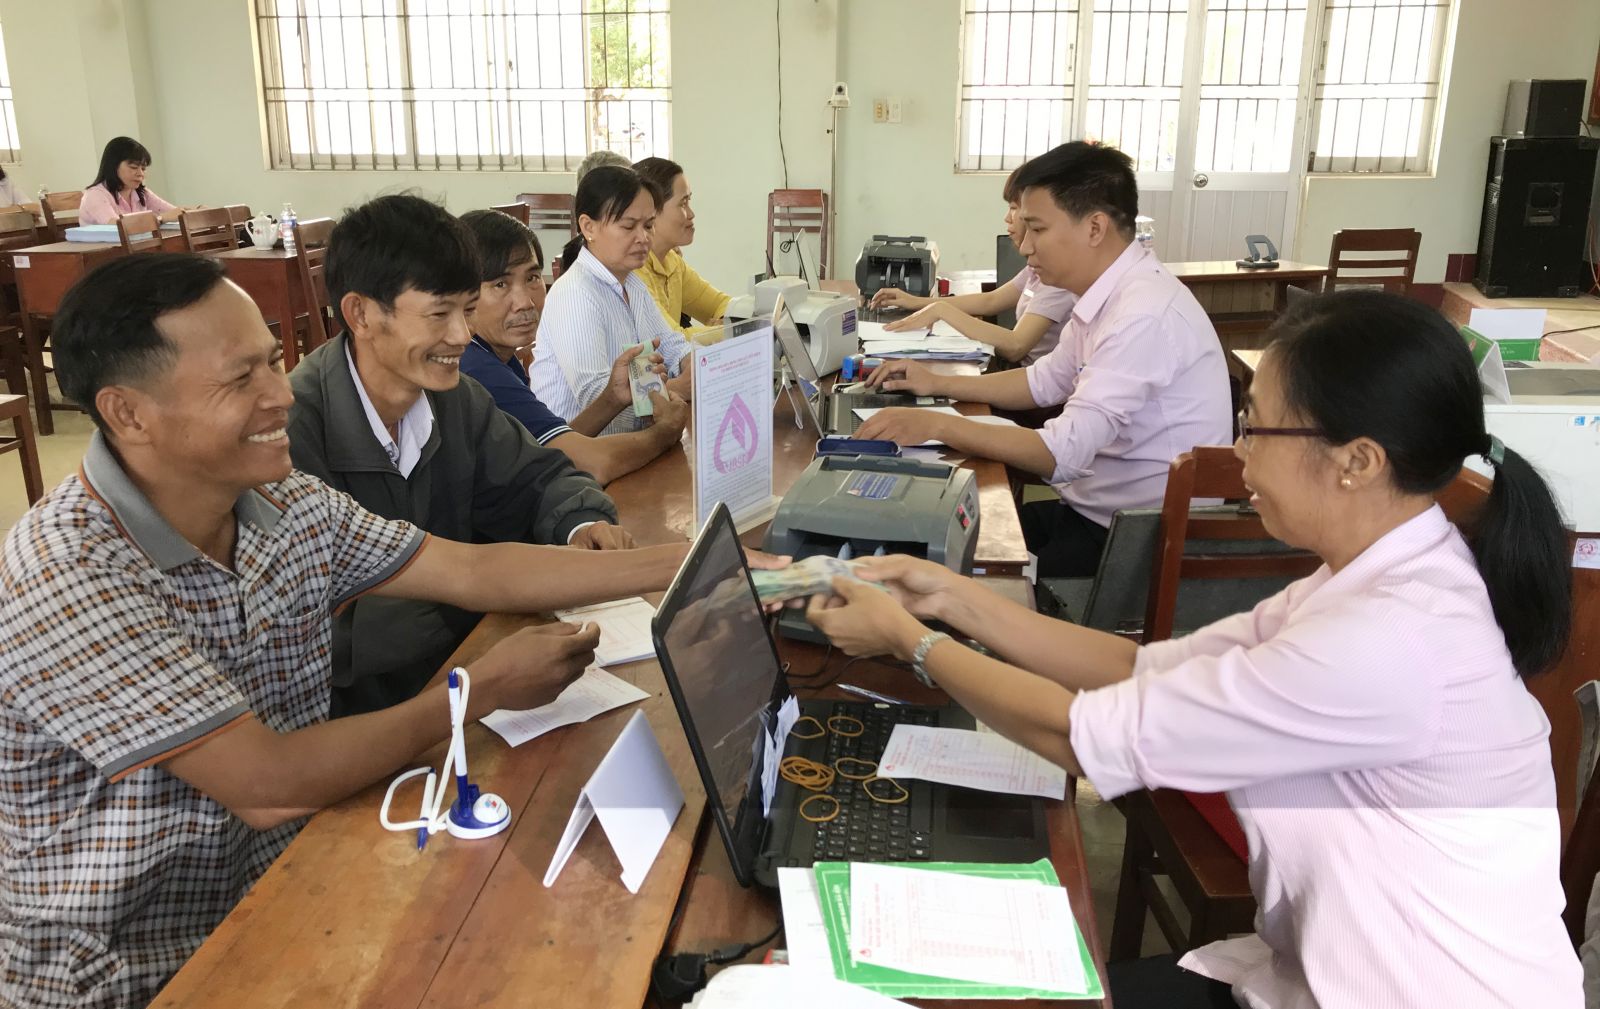 Hệ thống Điểm giao dịch tại xã của chi nhánh NHCSXH tỉnh Bình Định luôn đáp ứng nhu cầu vay vốn của người nghèo. Ảnh thực hiện trước 27/4/2021